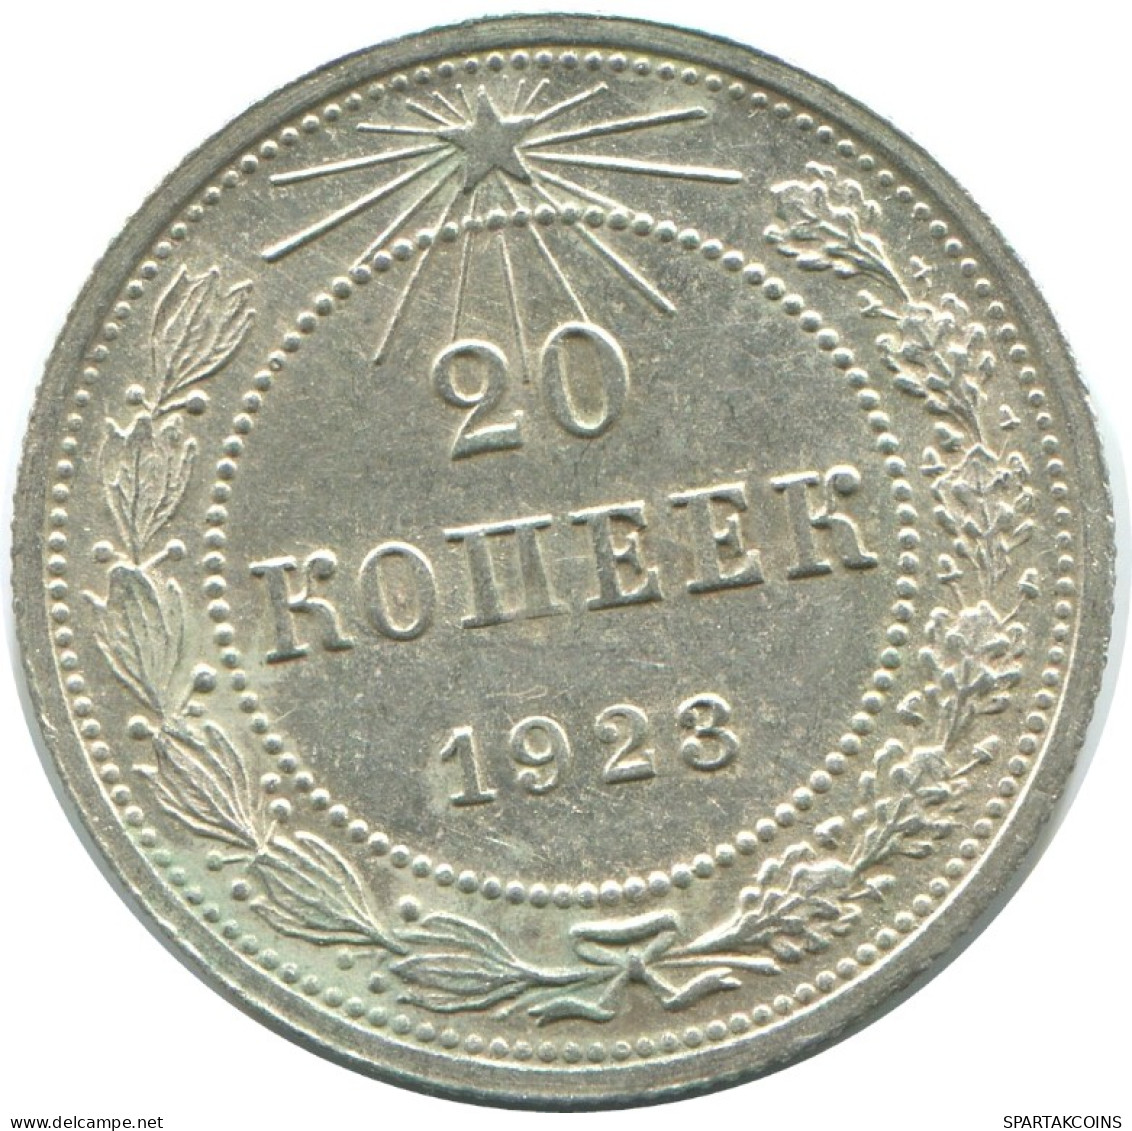 20 KOPEKS 1923 RUSSIA RSFSR SILVER Coin HIGH GRADE #AF558.4.U.A - Rusland